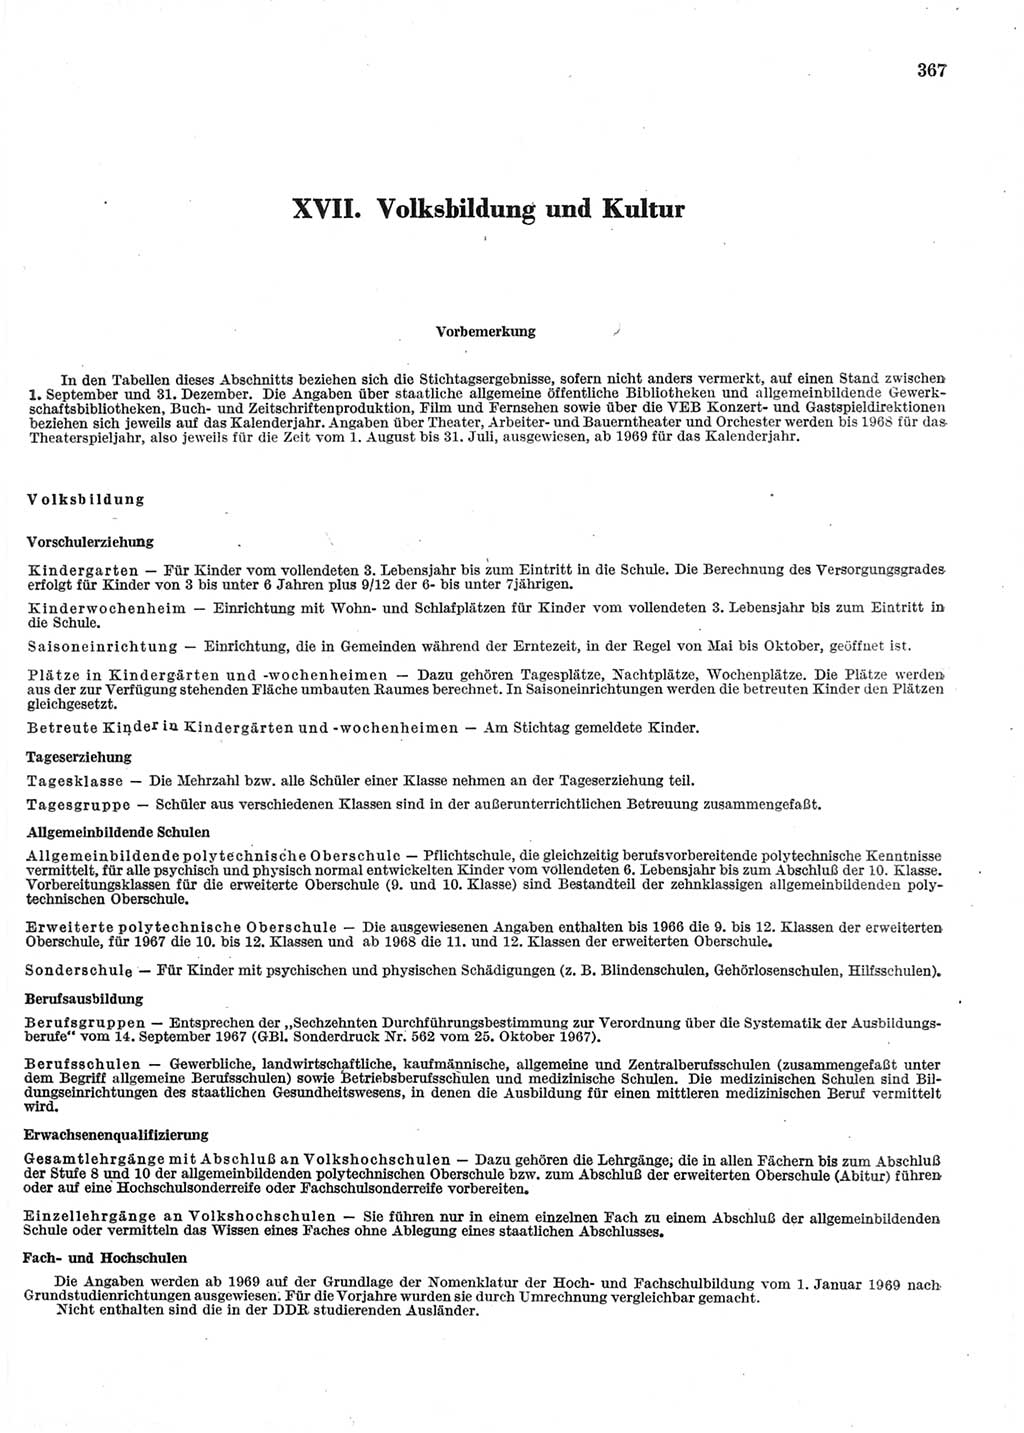 Statistisches Jahrbuch der Deutschen Demokratischen Republik (DDR) 1970, Seite 367 (Stat. Jb. DDR 1970, S. 367)